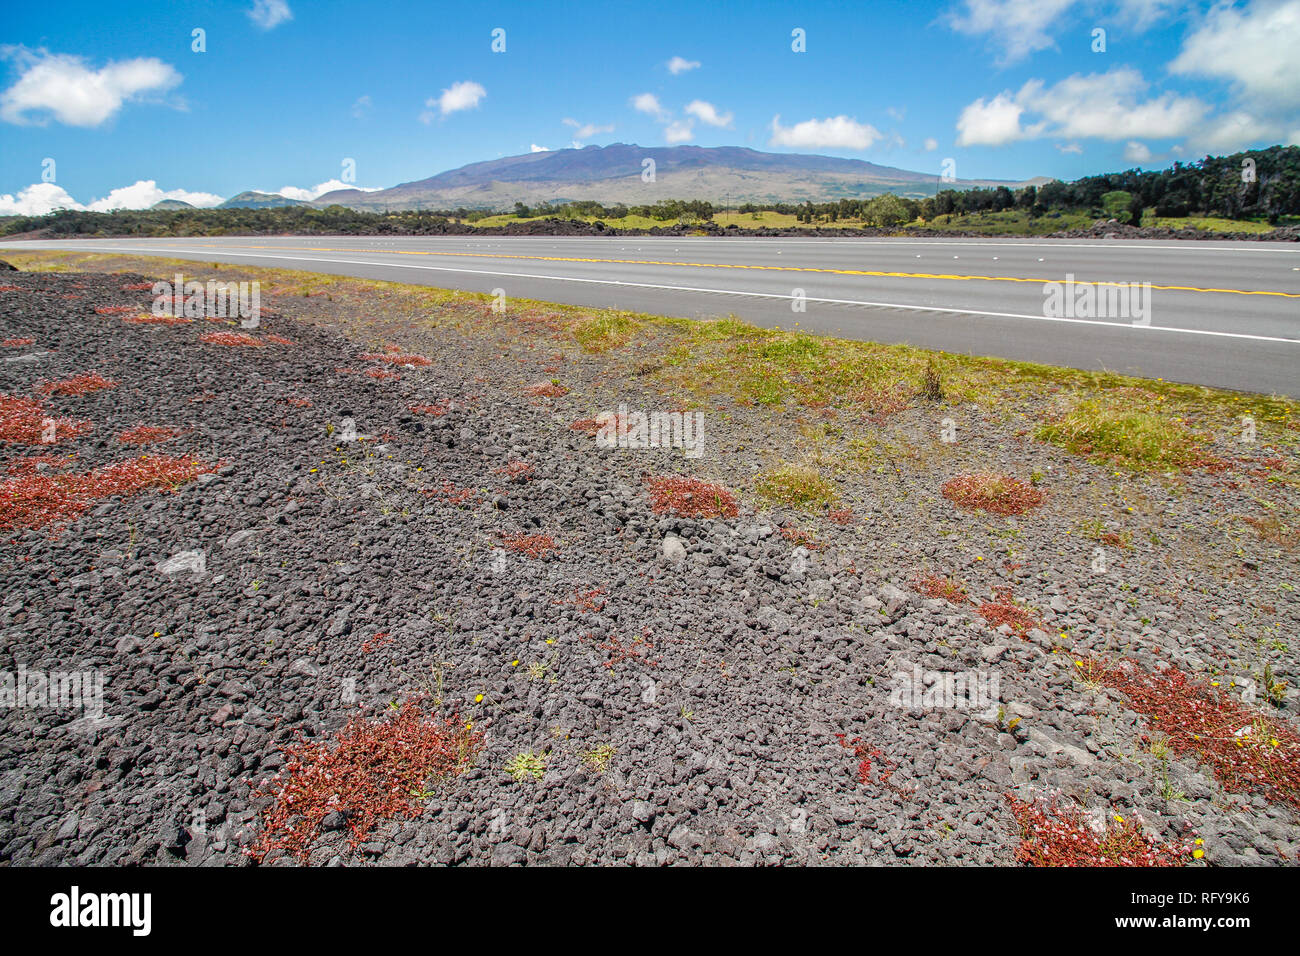 Vulkanische Gesteine und rote Blumen in der Nähe der Straße bis zum Mauna Kea Berg auf Big Island, Hawaii suchen Stockfoto